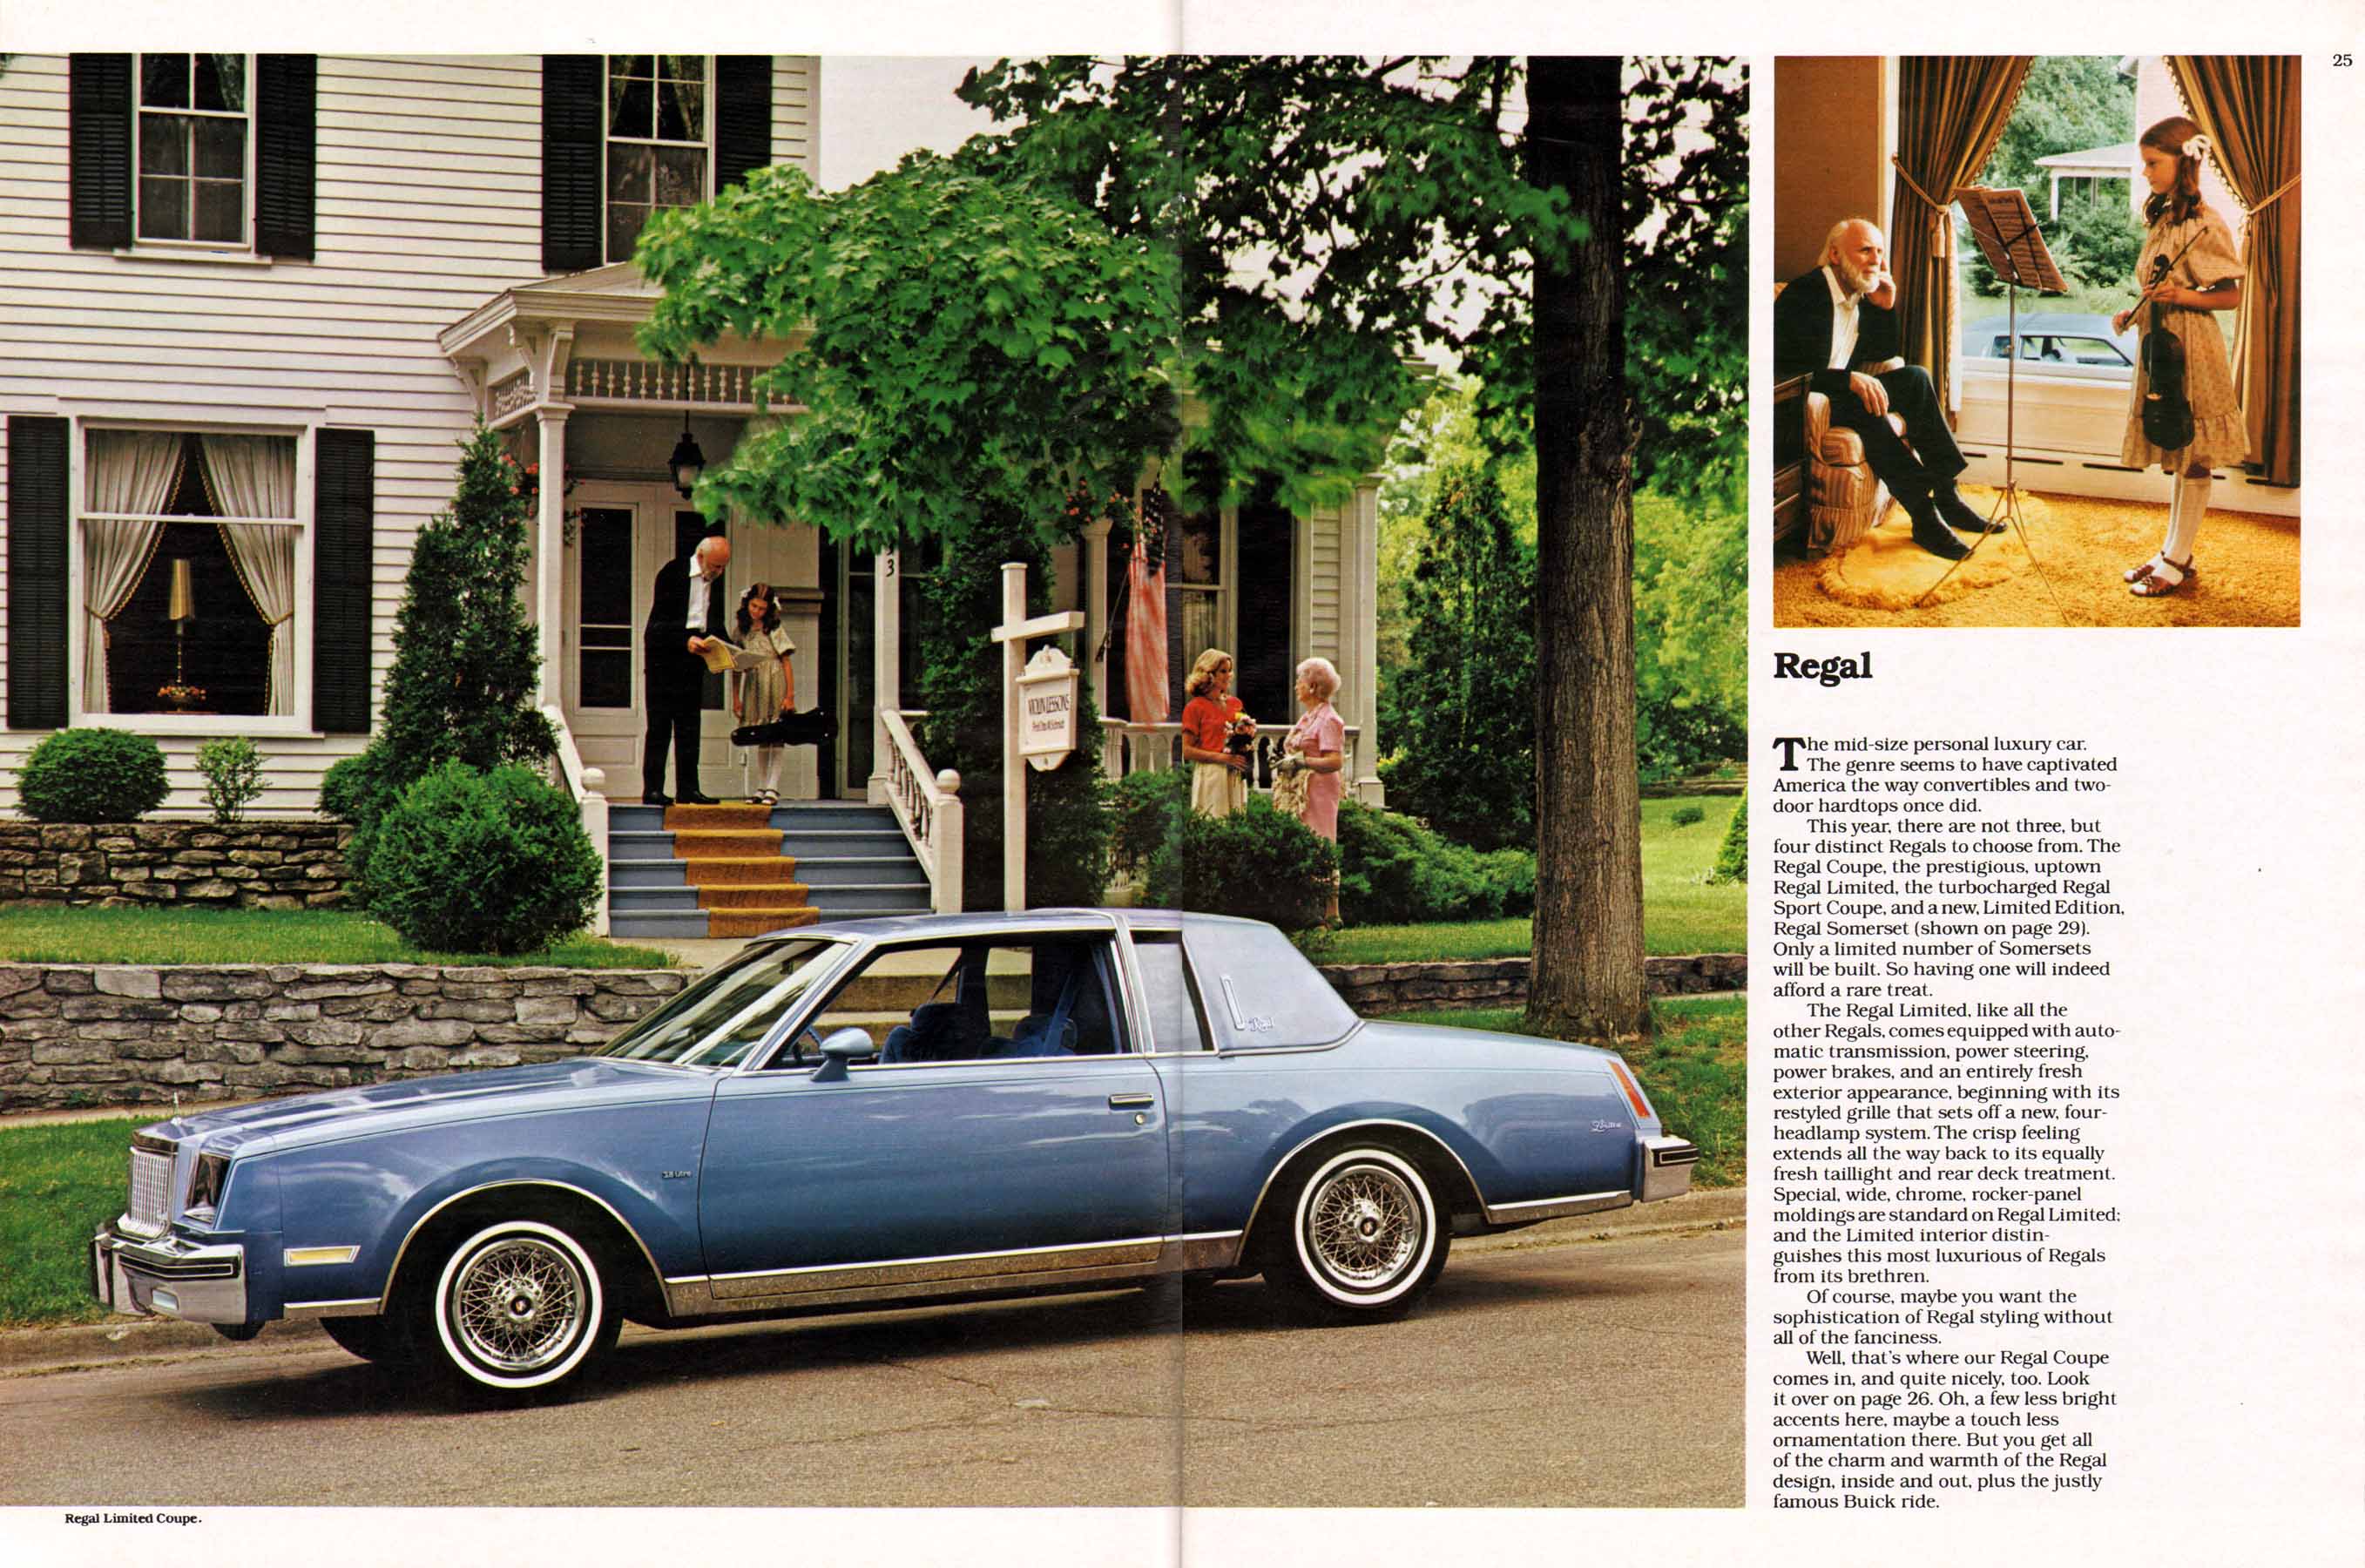 1980 Buick Full Line Prestige-24-25